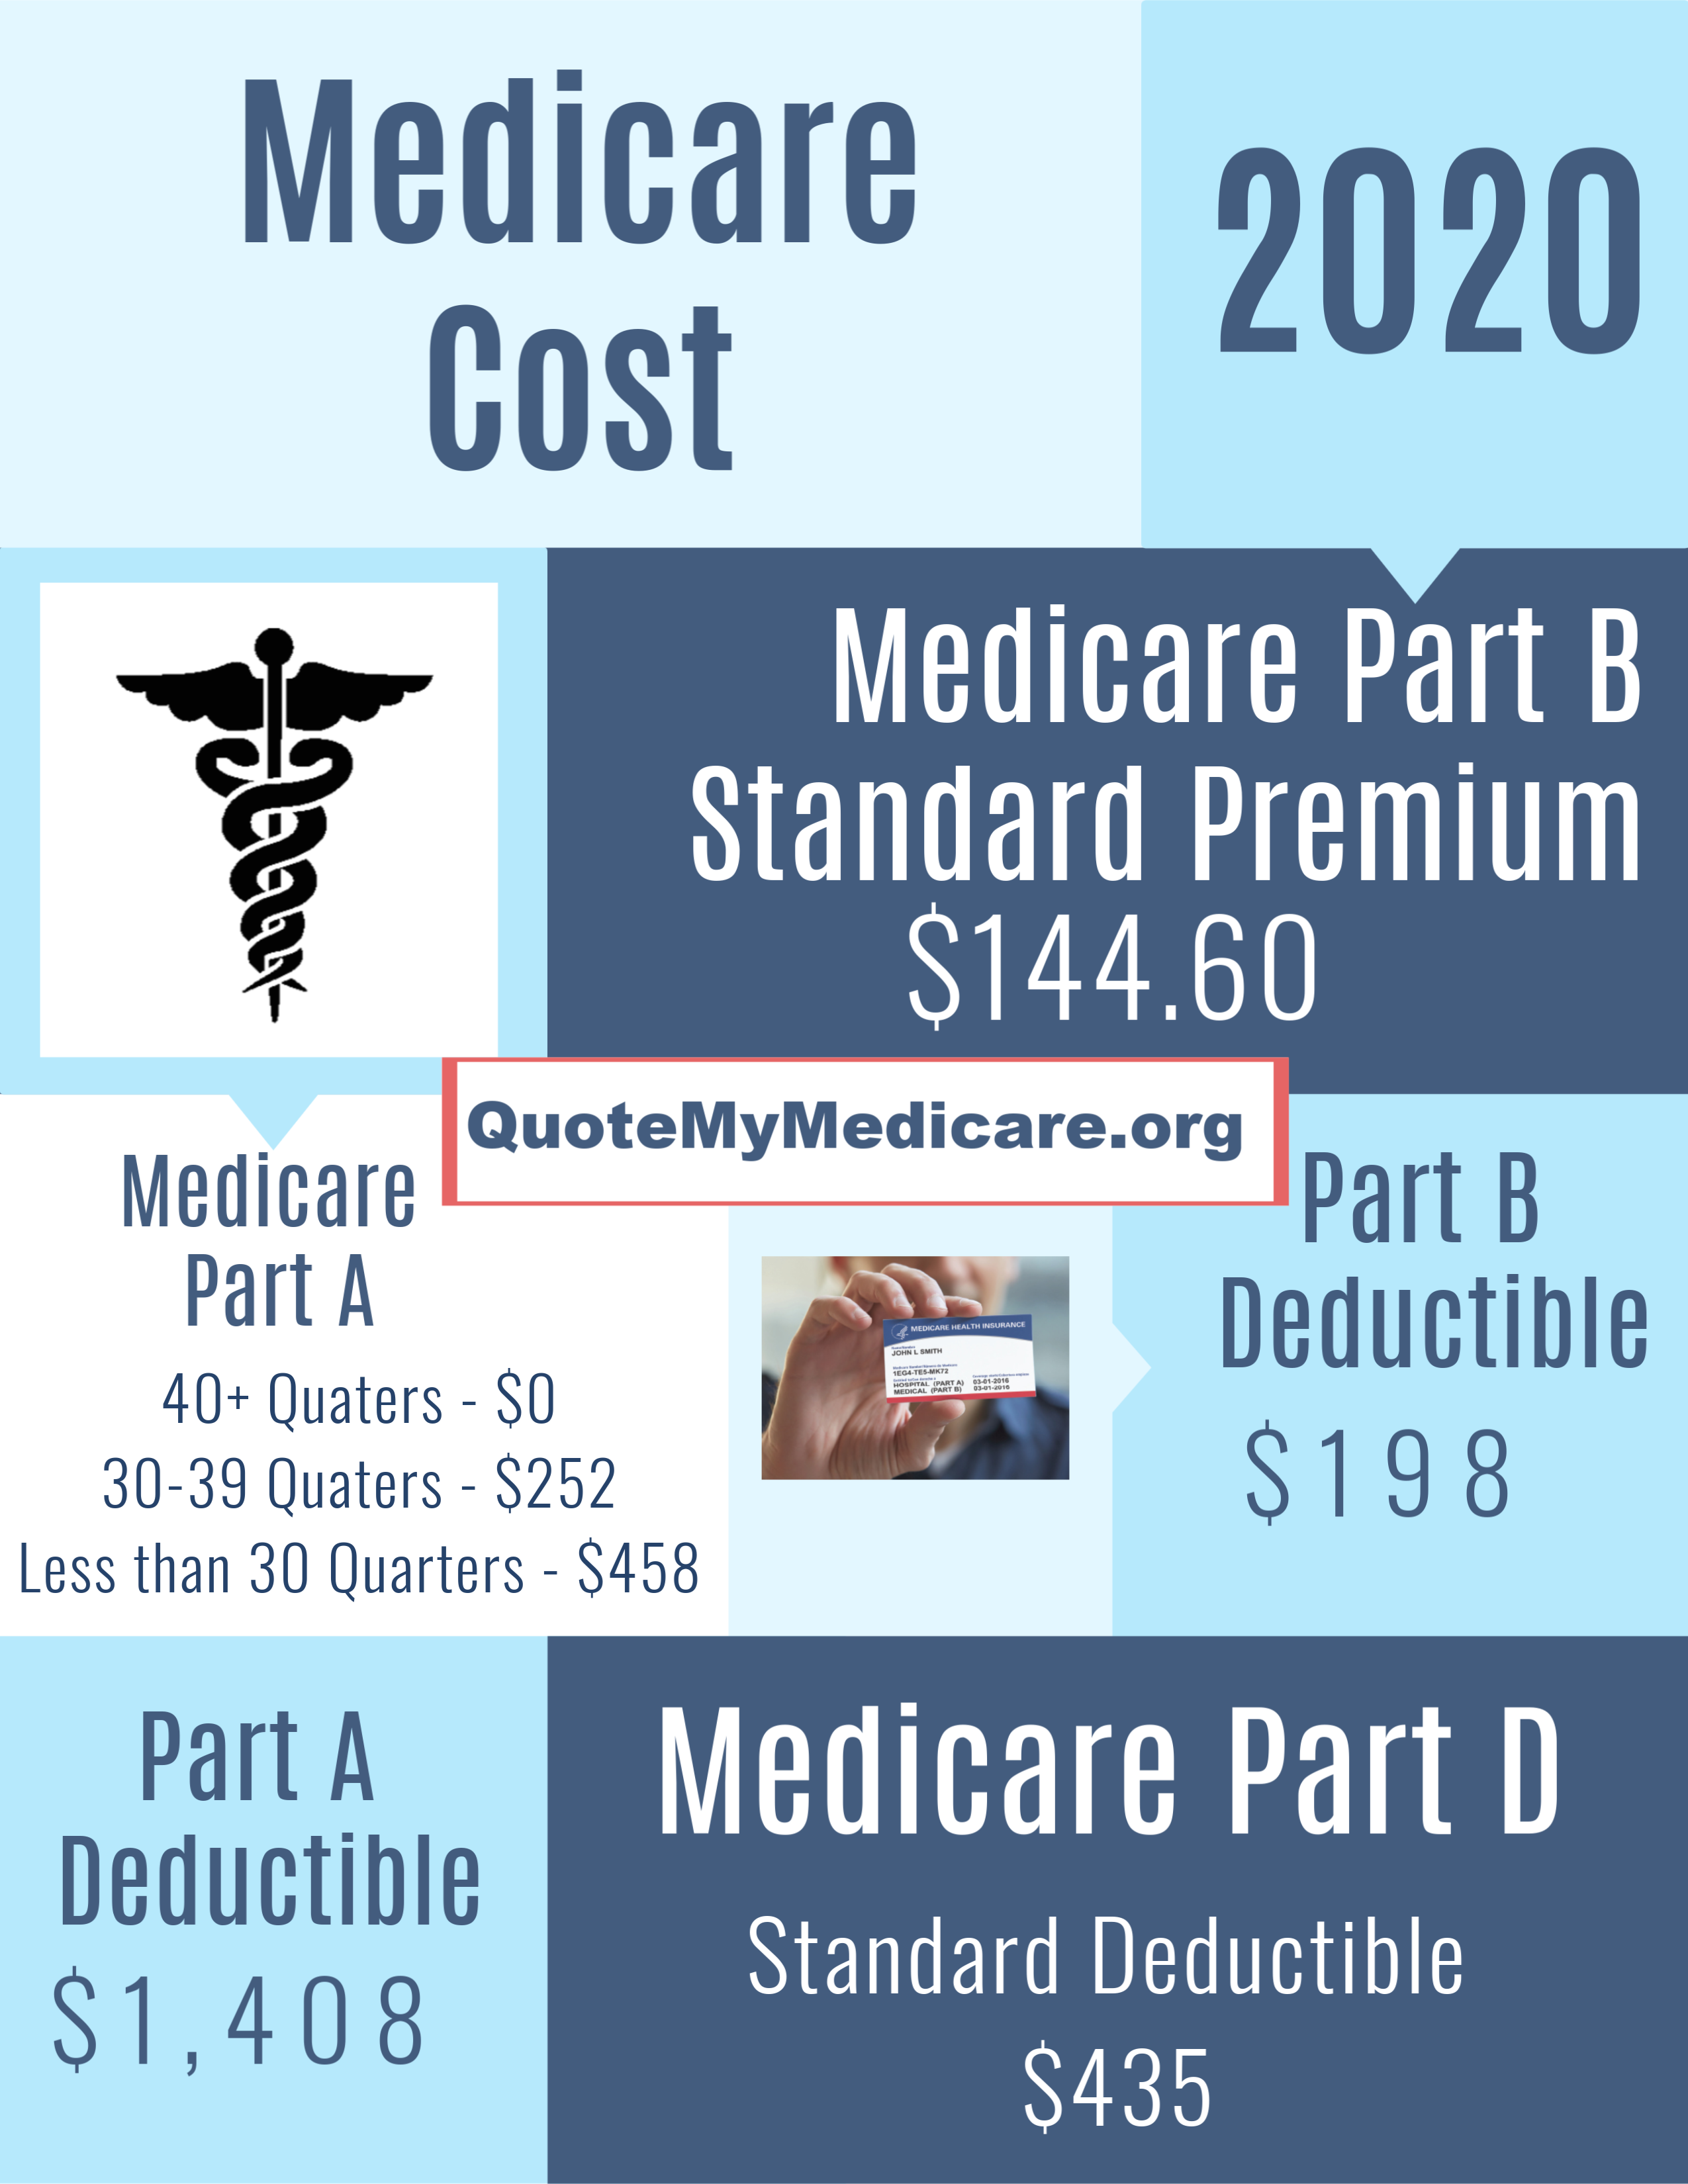 Medicare Part B Premium